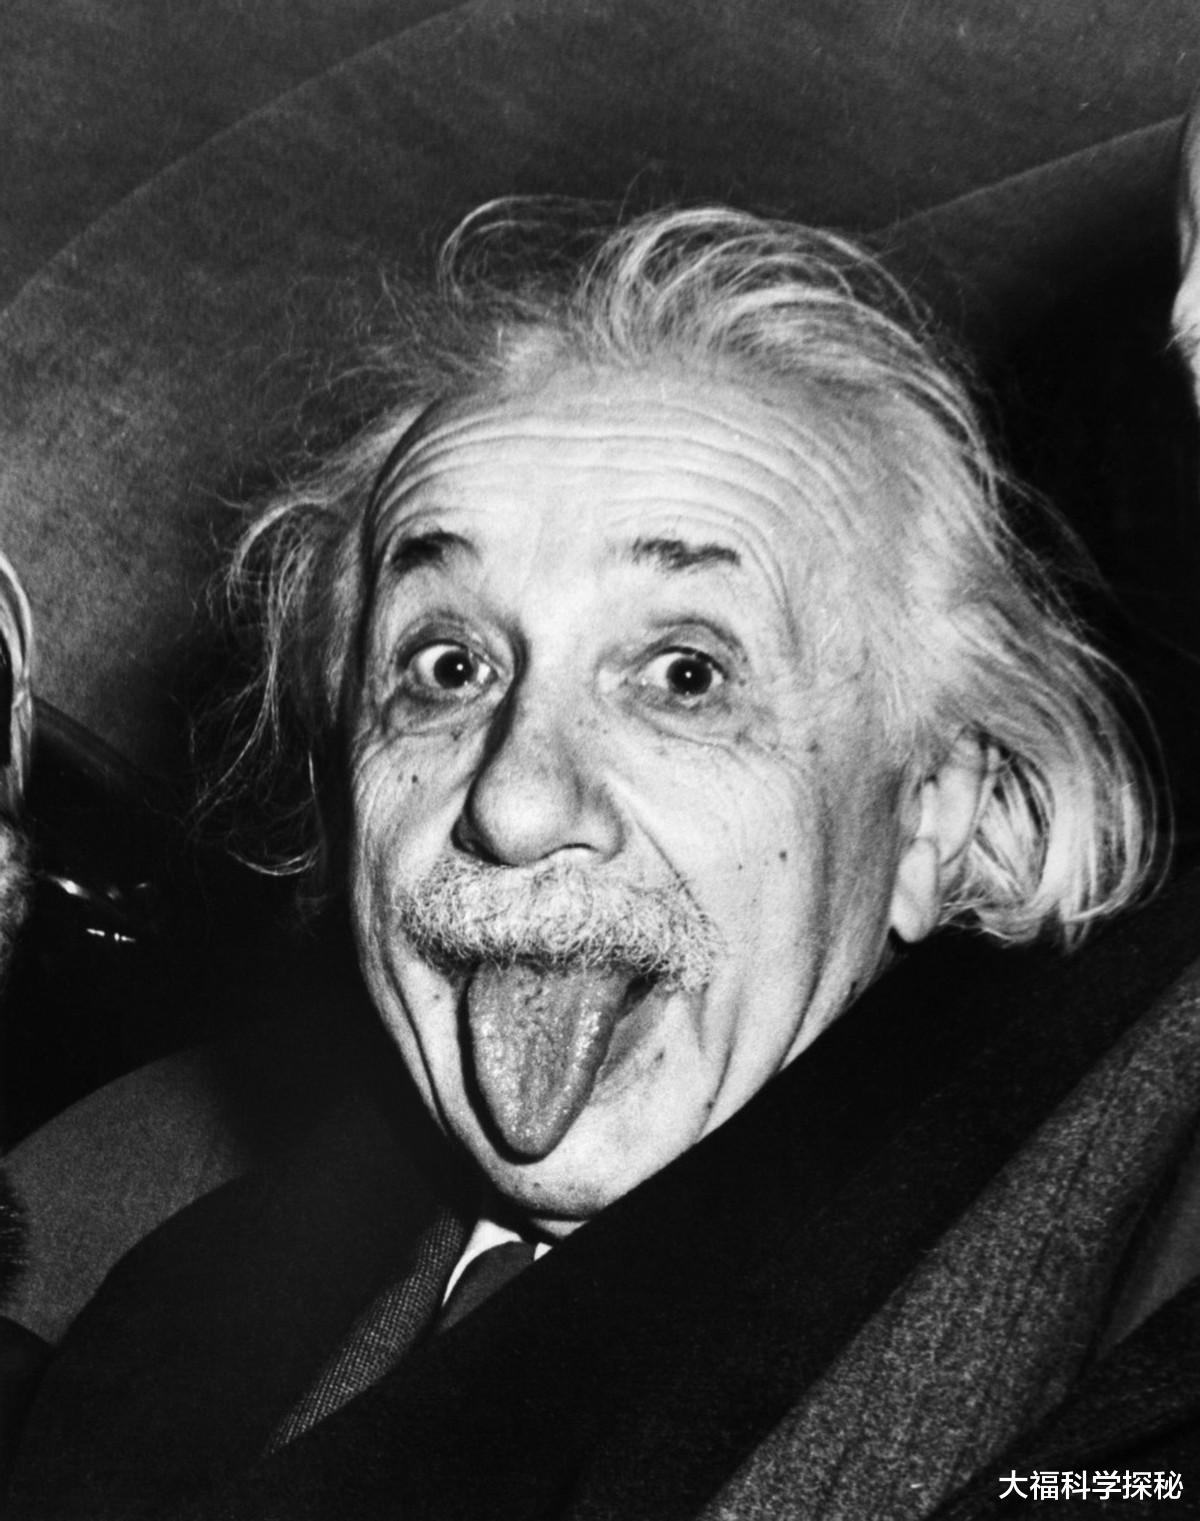 爱因斯坦去世前下了一盘大棋，才使得人类免遭核战威胁？他真聪明